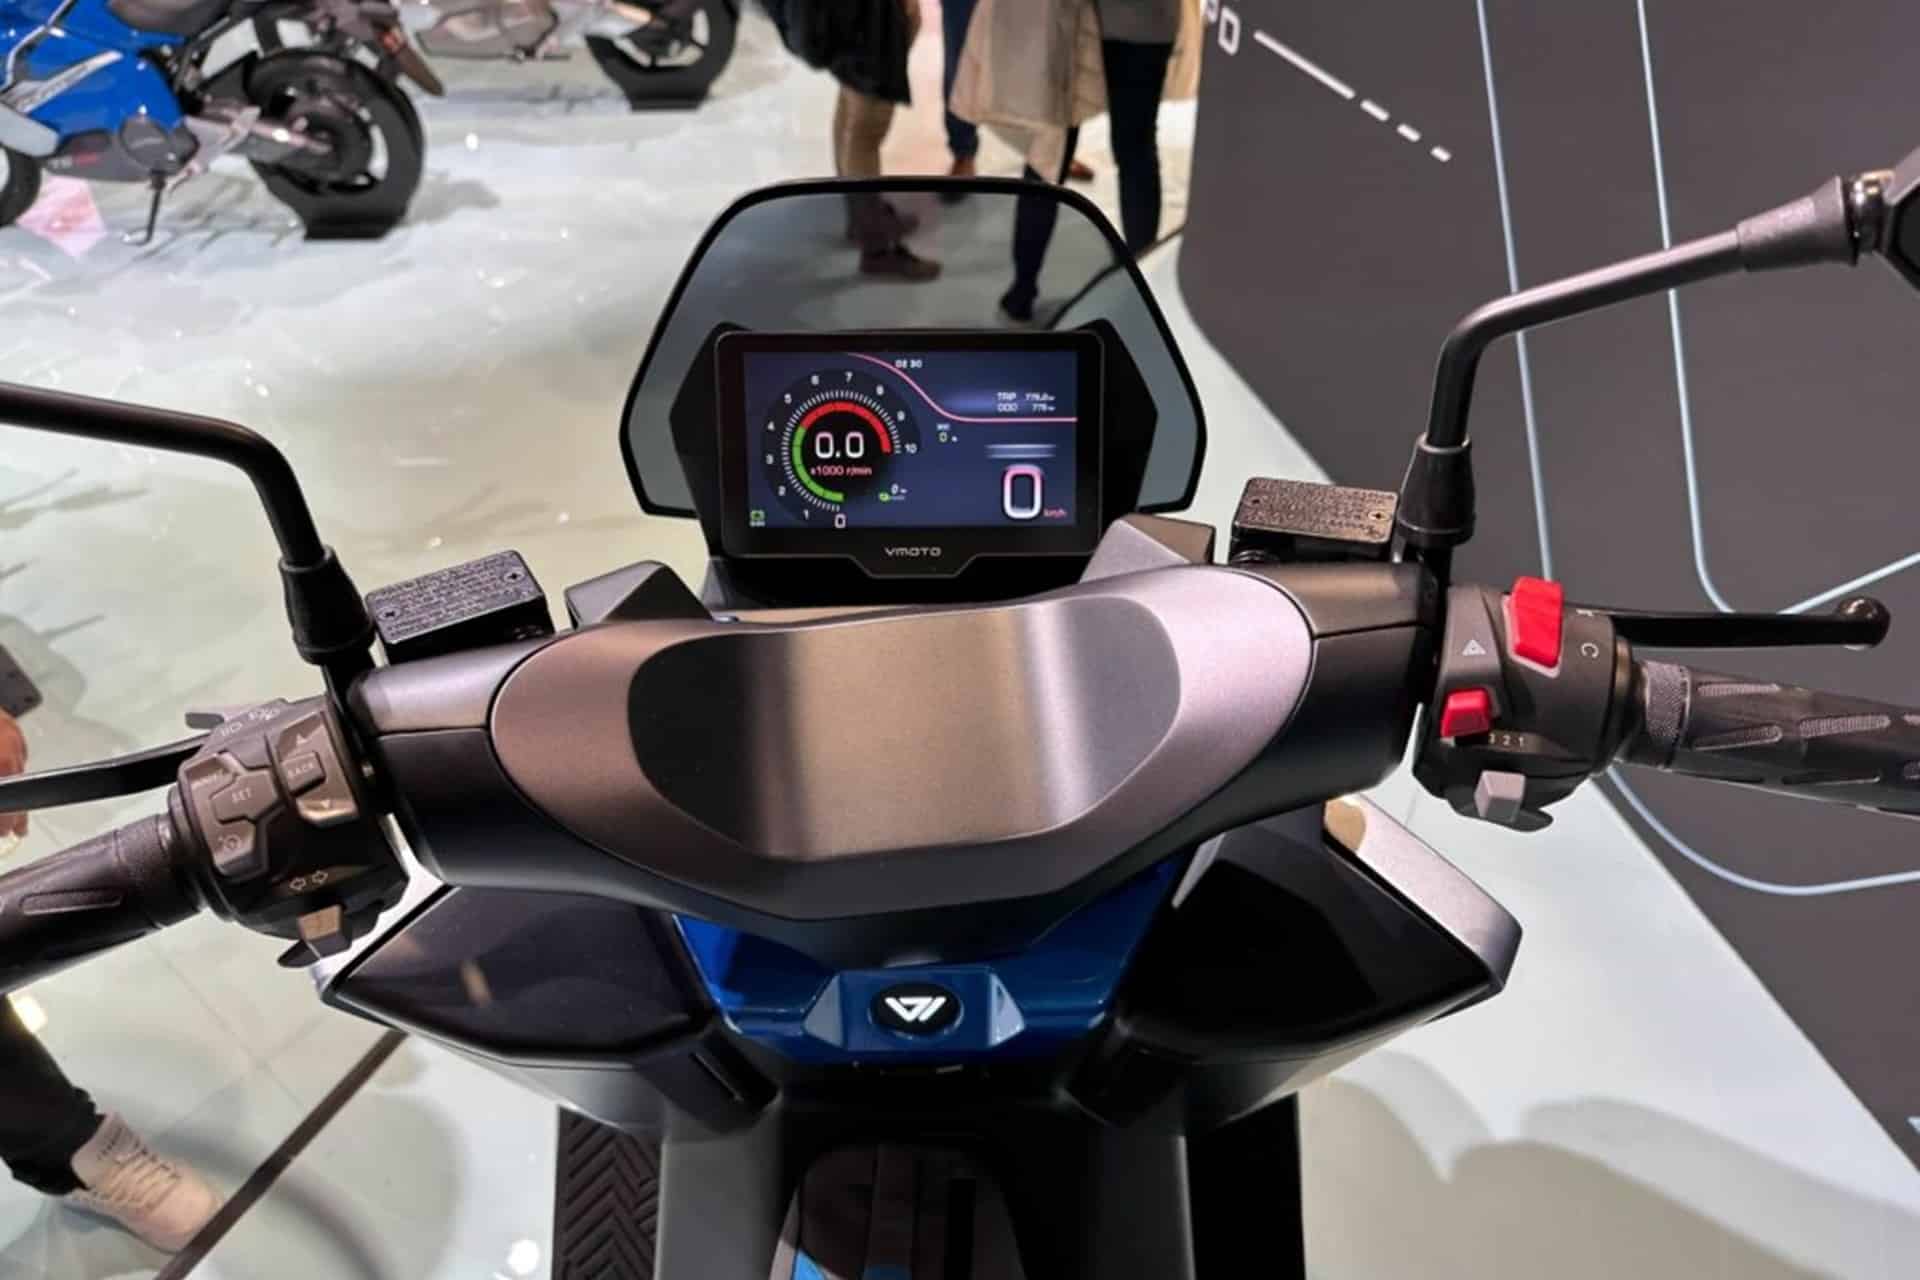 VMoto presenta en EICMA 2023 su nuevo APD Max, un maxi-scooter eléctrico destinado a competir con el BMW CE 04